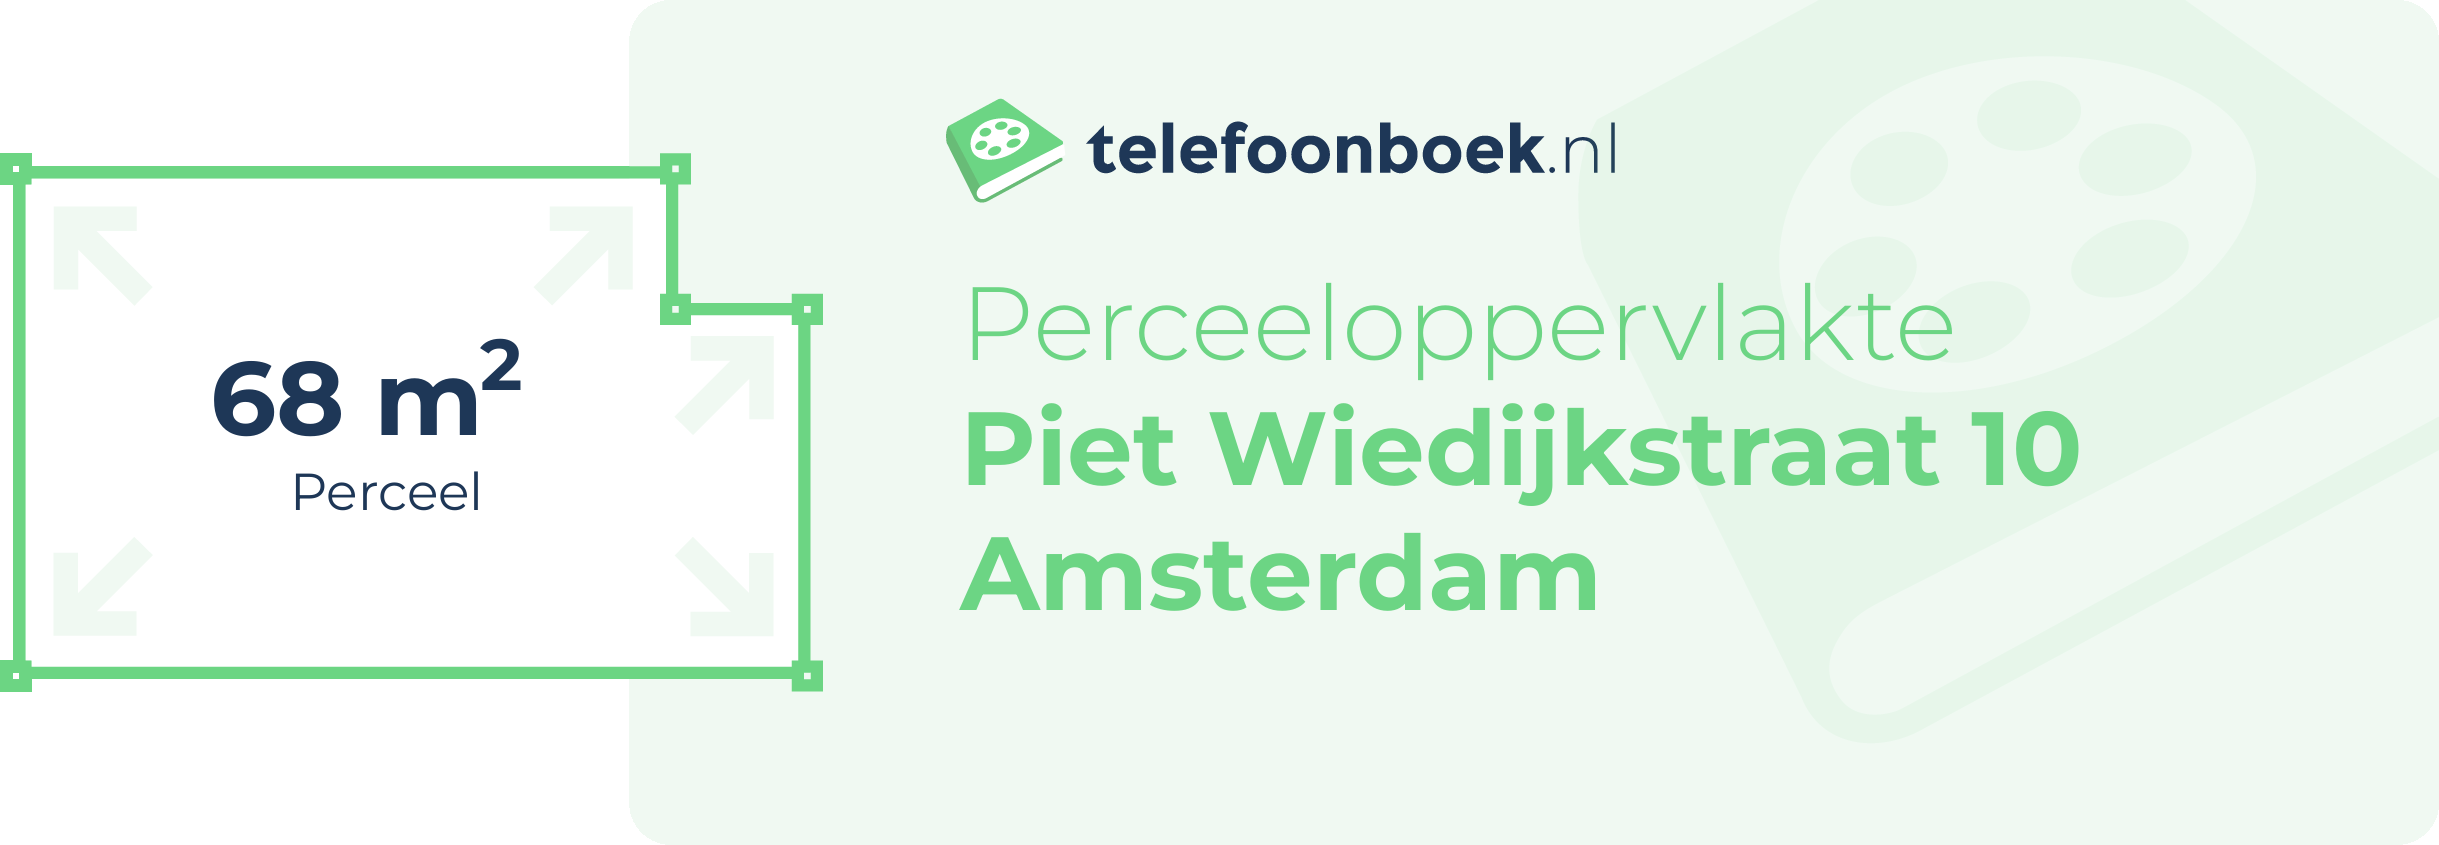 Perceeloppervlakte Piet Wiedijkstraat 10 Amsterdam